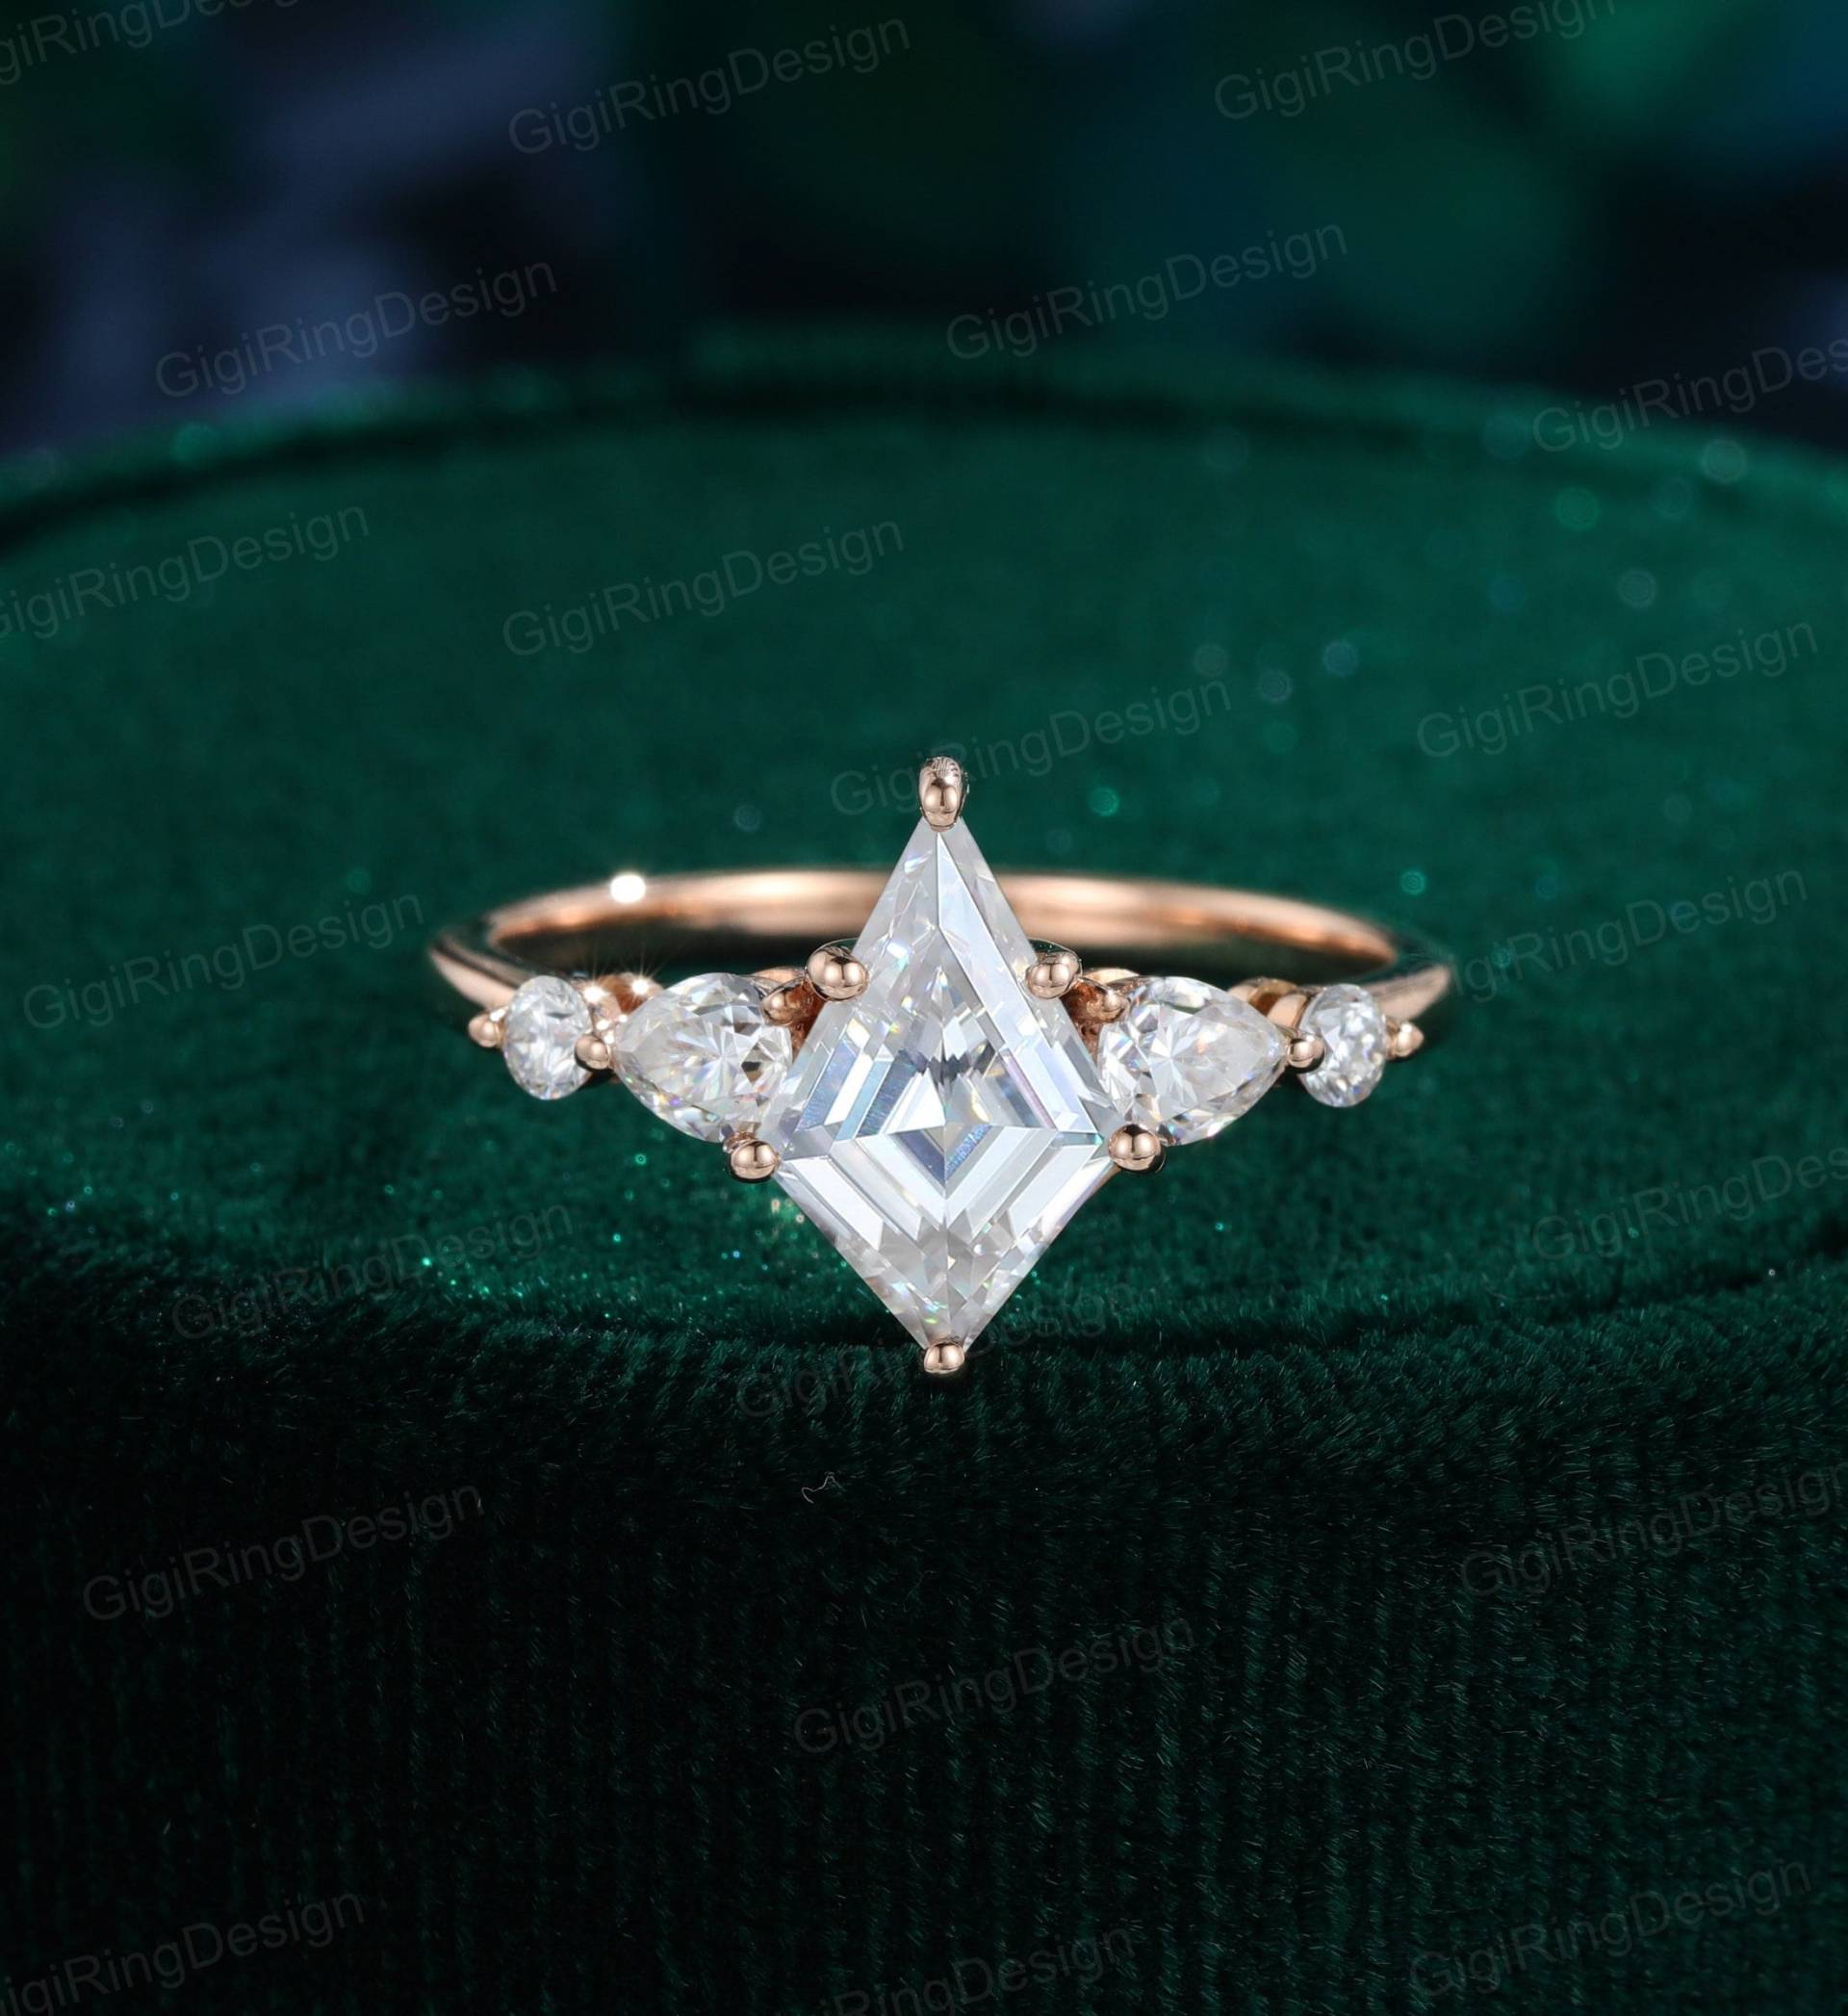 Moissanit Verlobungsring Frauen Rosegold Kite Cut Ring Unikat Simuliert Diamant Braut Versprechen Jubiläum von GigiRingDesign